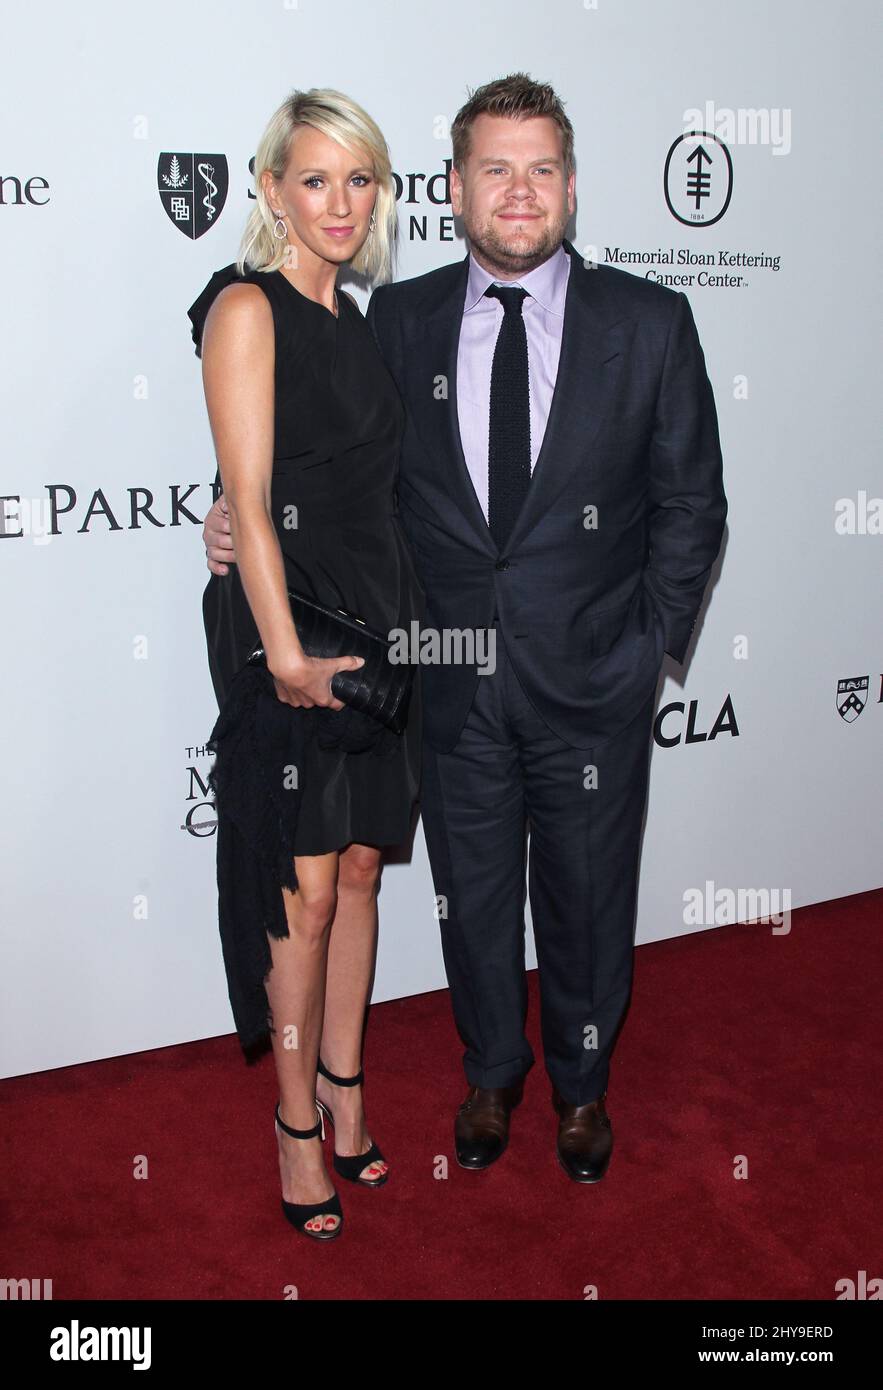 James Corden e Julia Carey arrivano a Sean Parker e il gala della Parker Foundation per celebrare una pietra miliare nella ricerca medica mercoledì 13 aprile 2016 a Los Angeles. Foto Stock